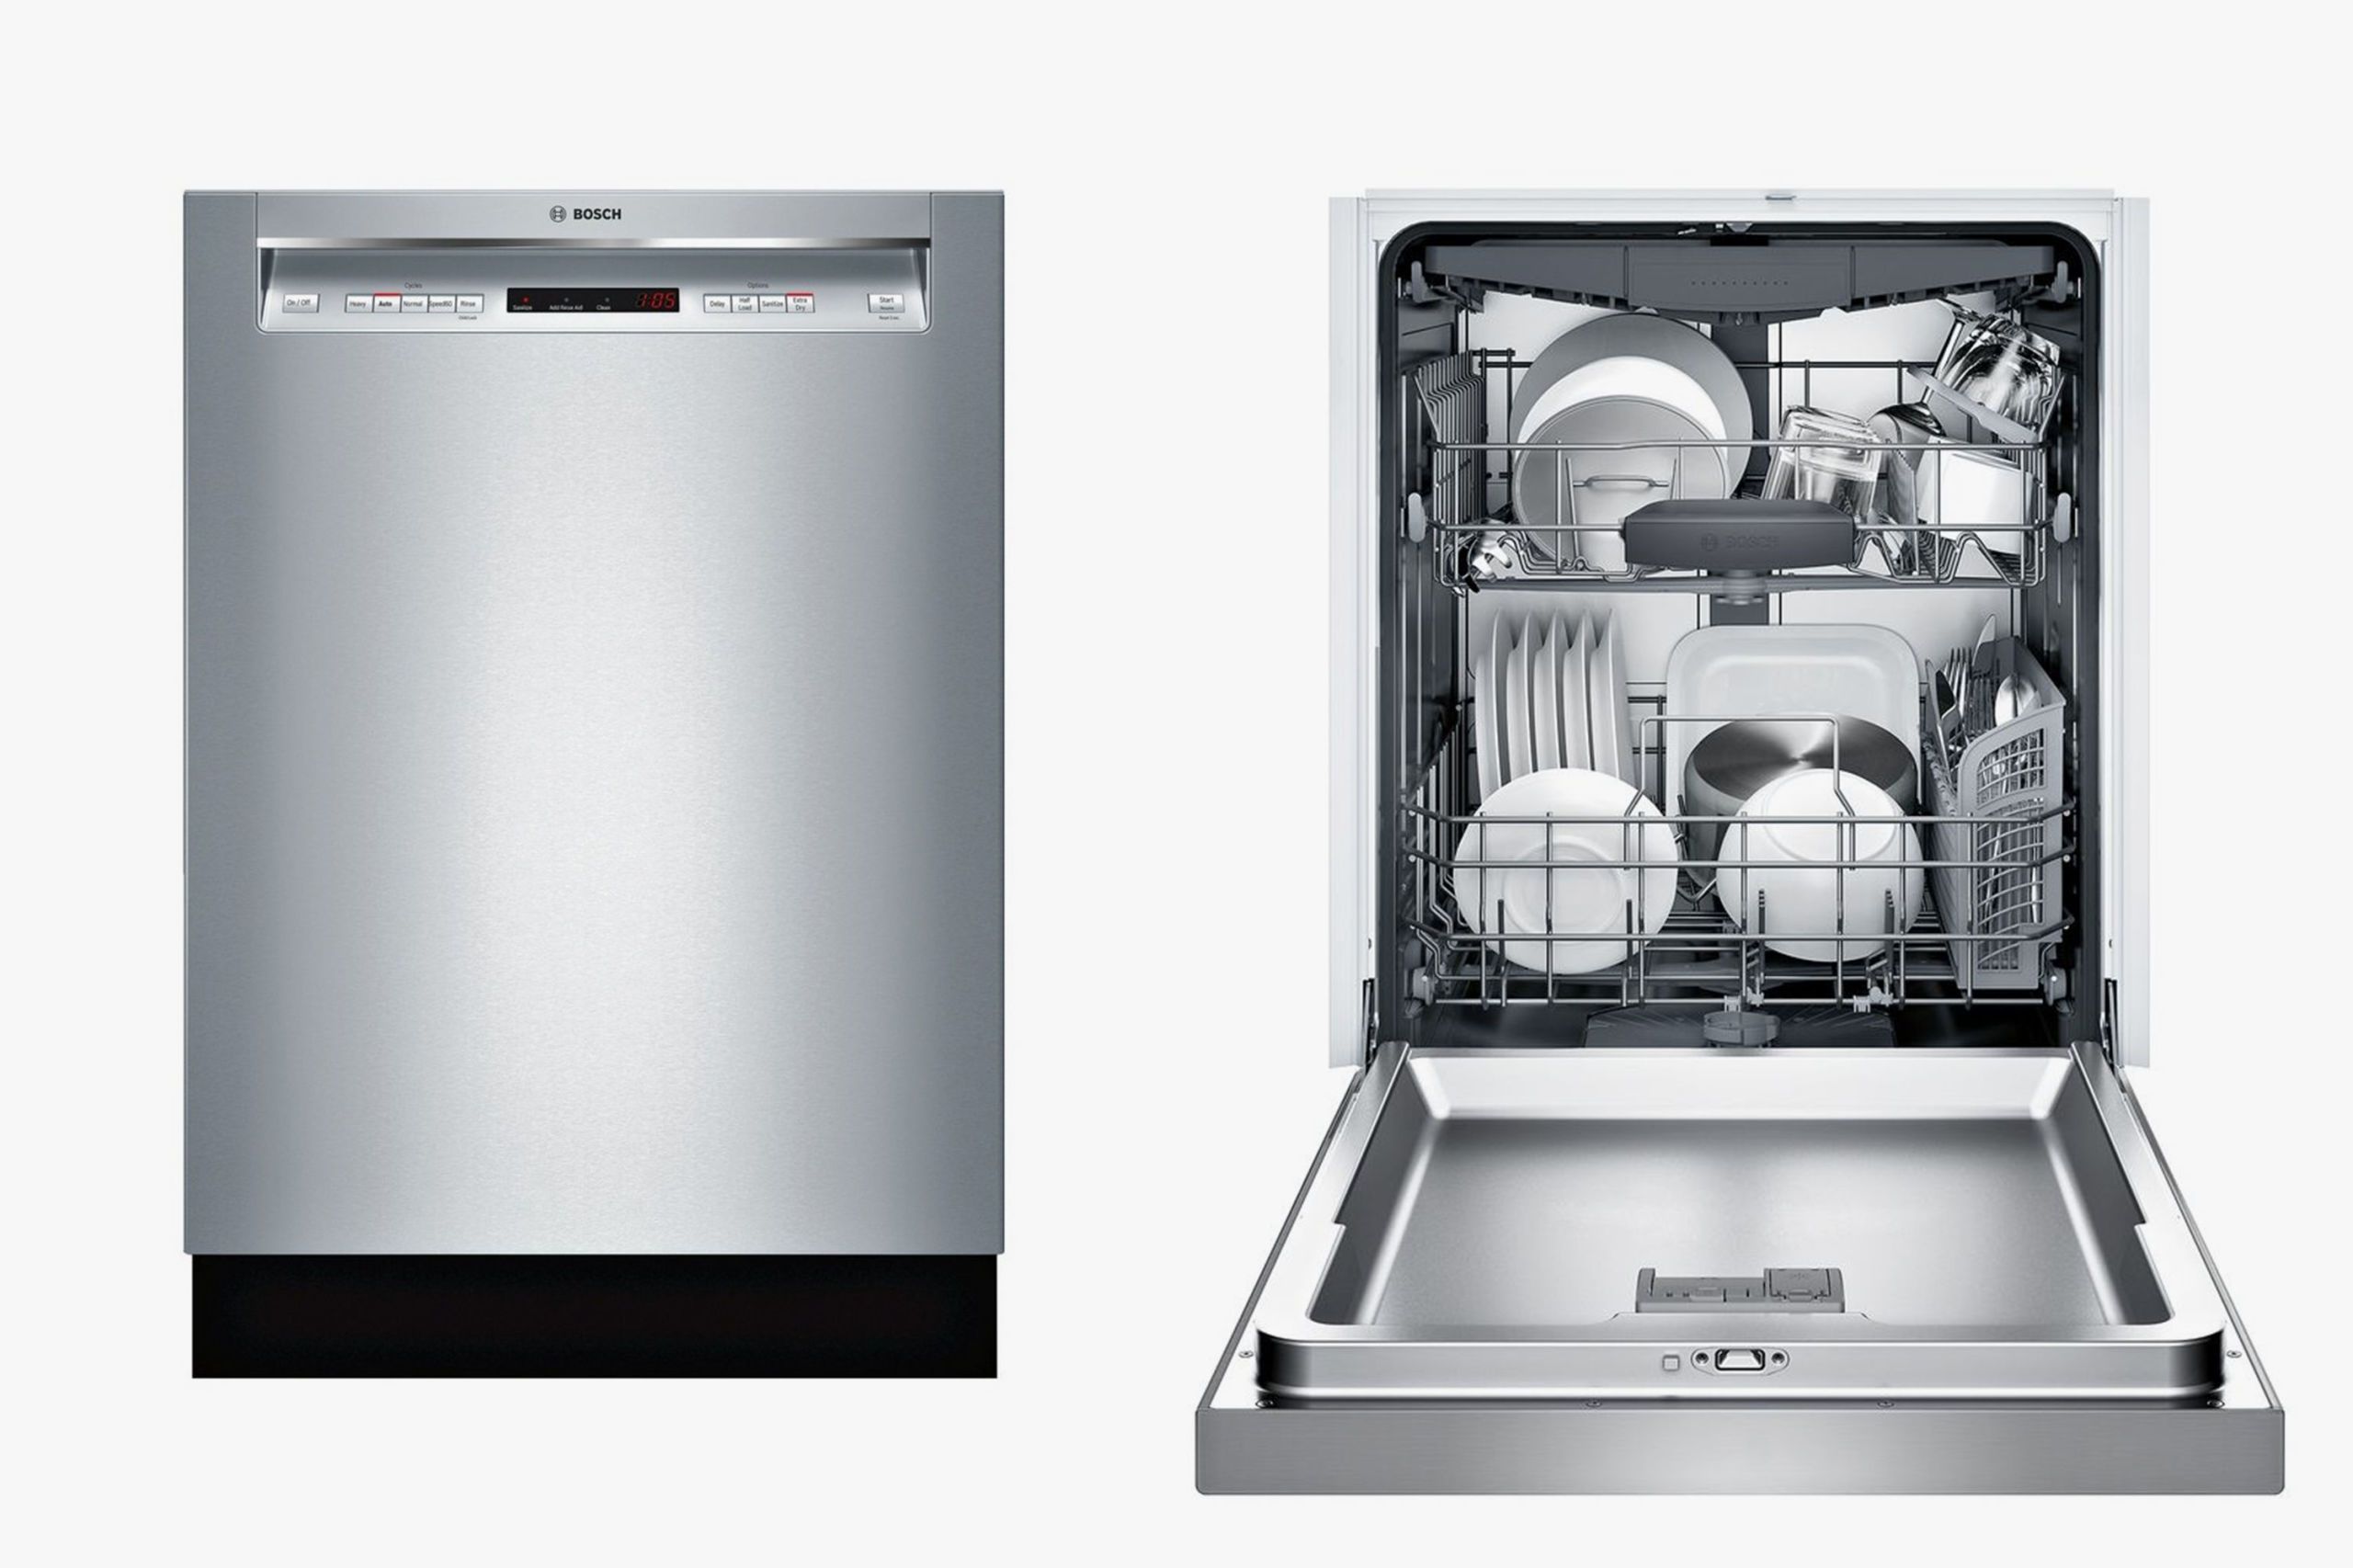 1561066346 Bosch 300 Series Dishwasher 1561066328 ?crop=1xw 1xh;center,top